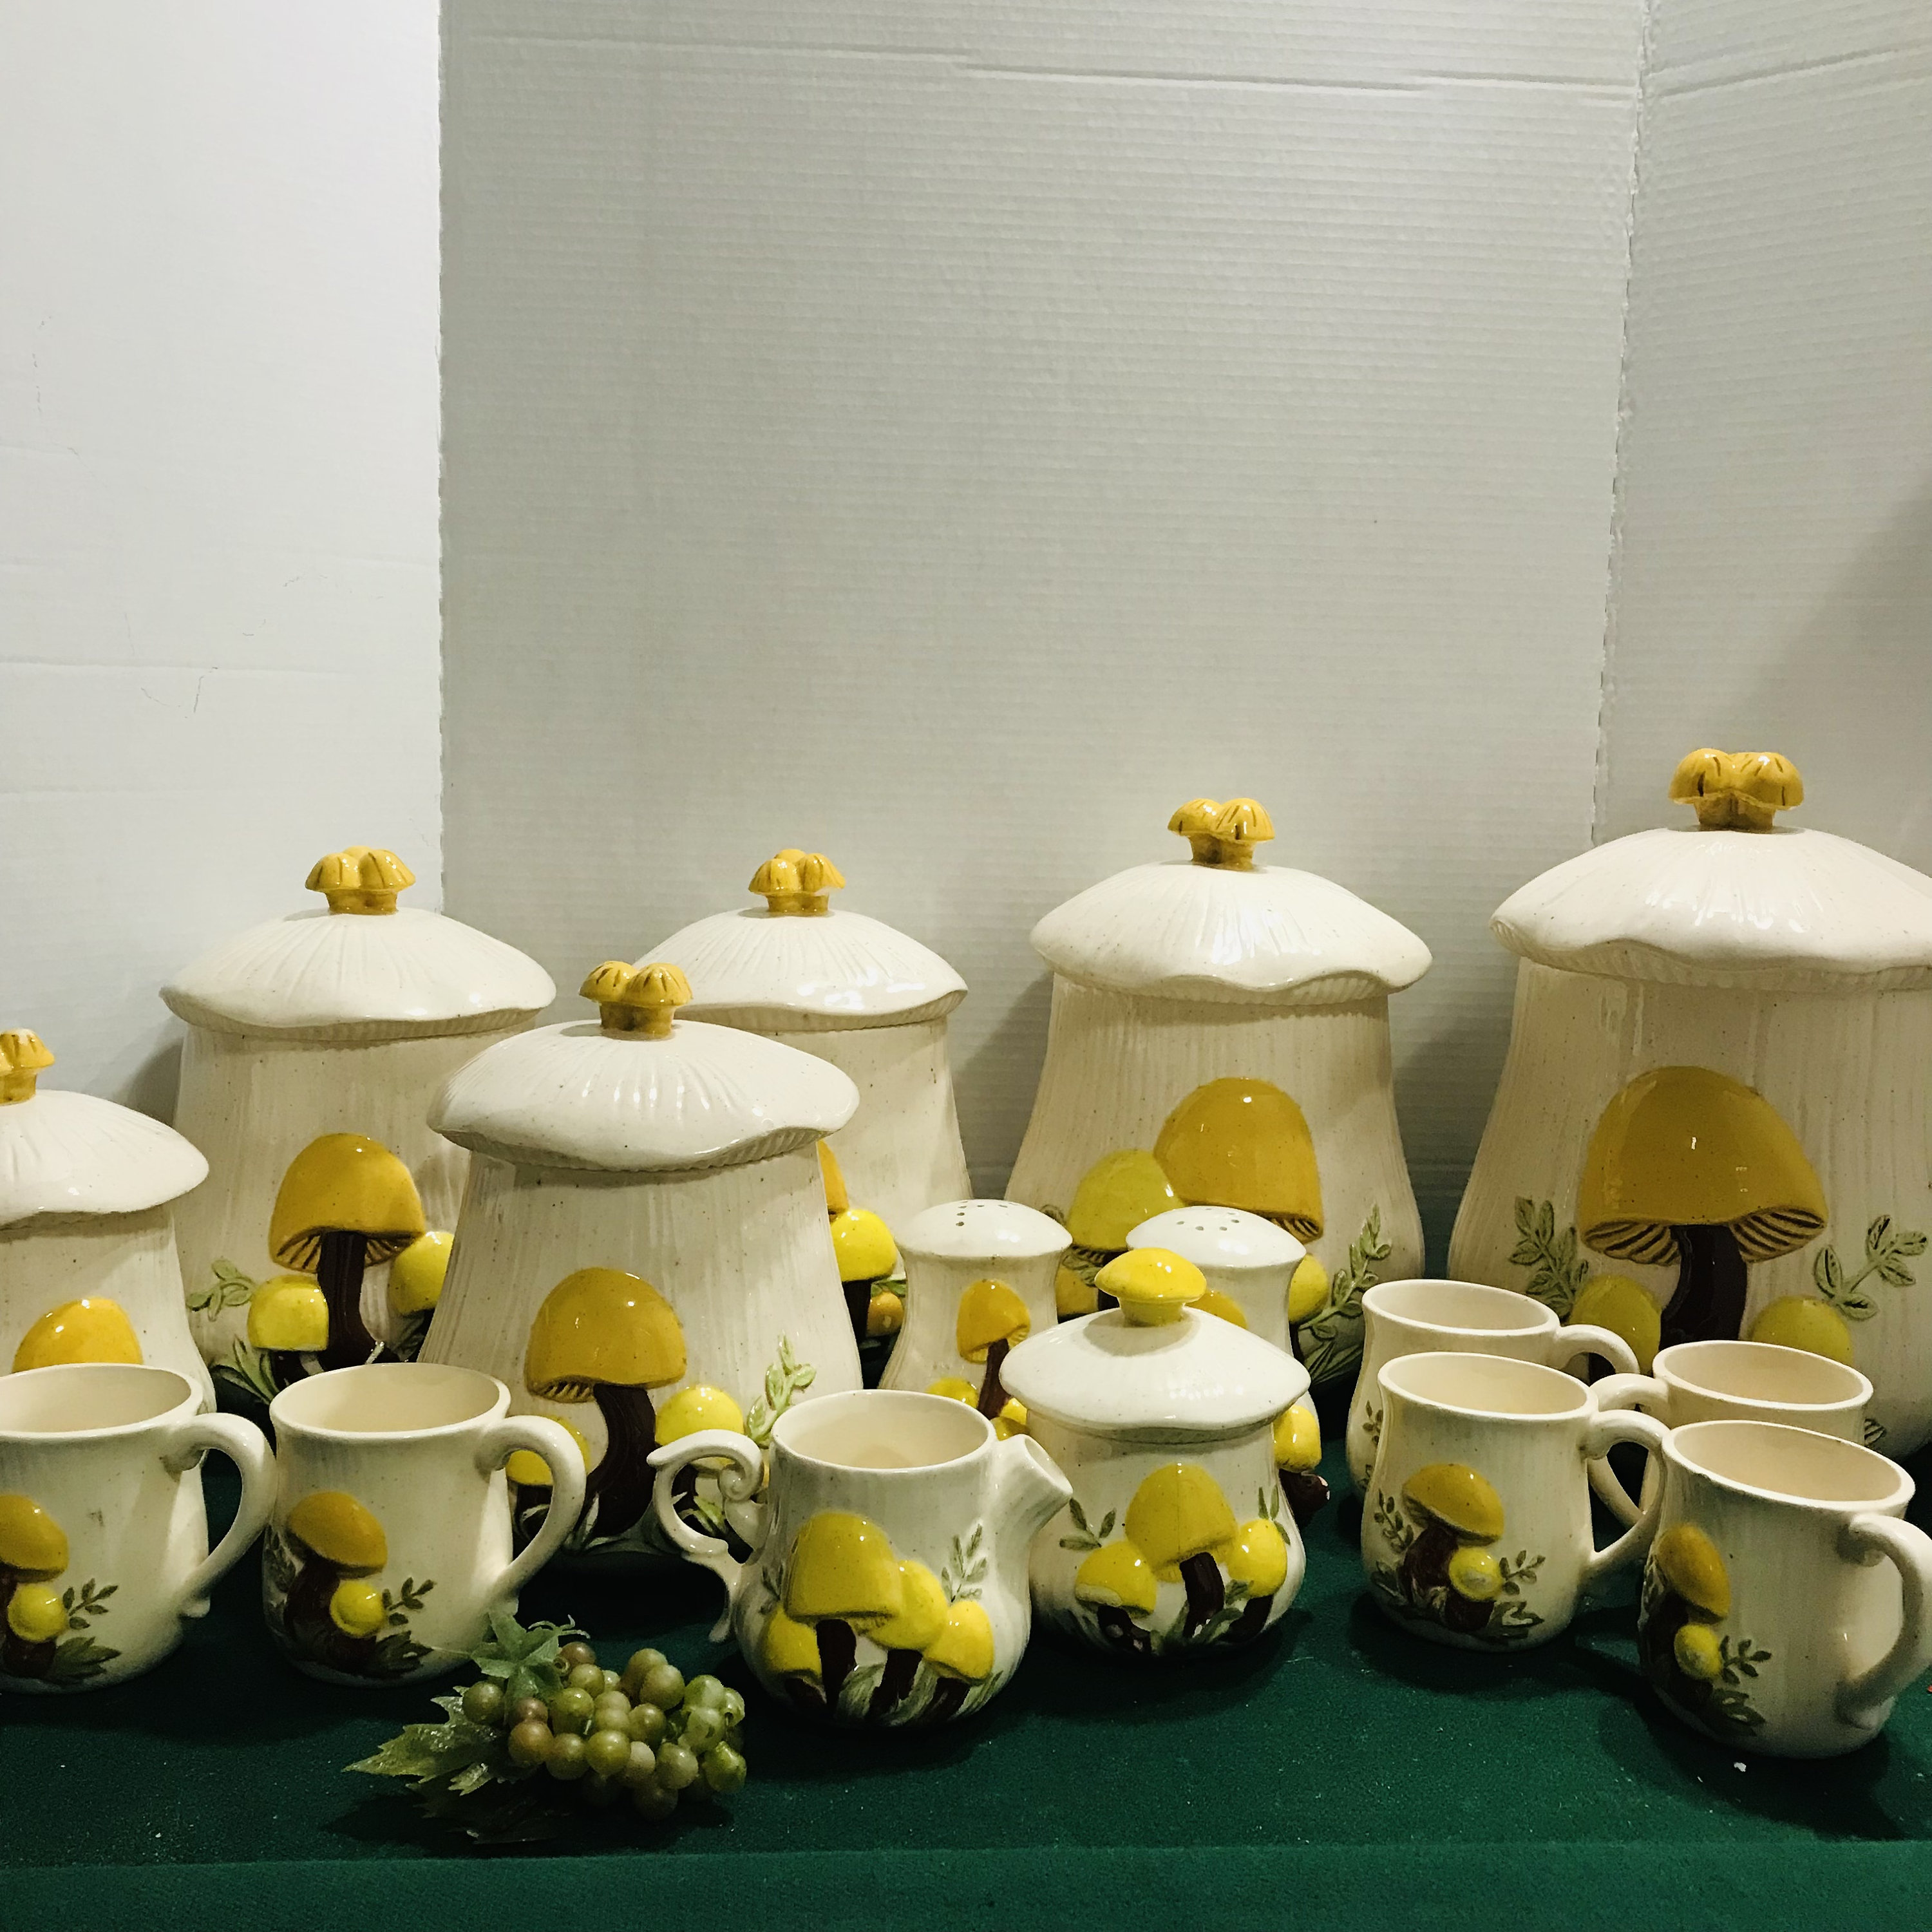 Arnel's Mushroom Pottery Tea Set, Mushroom Teapot Cream Sugar Set